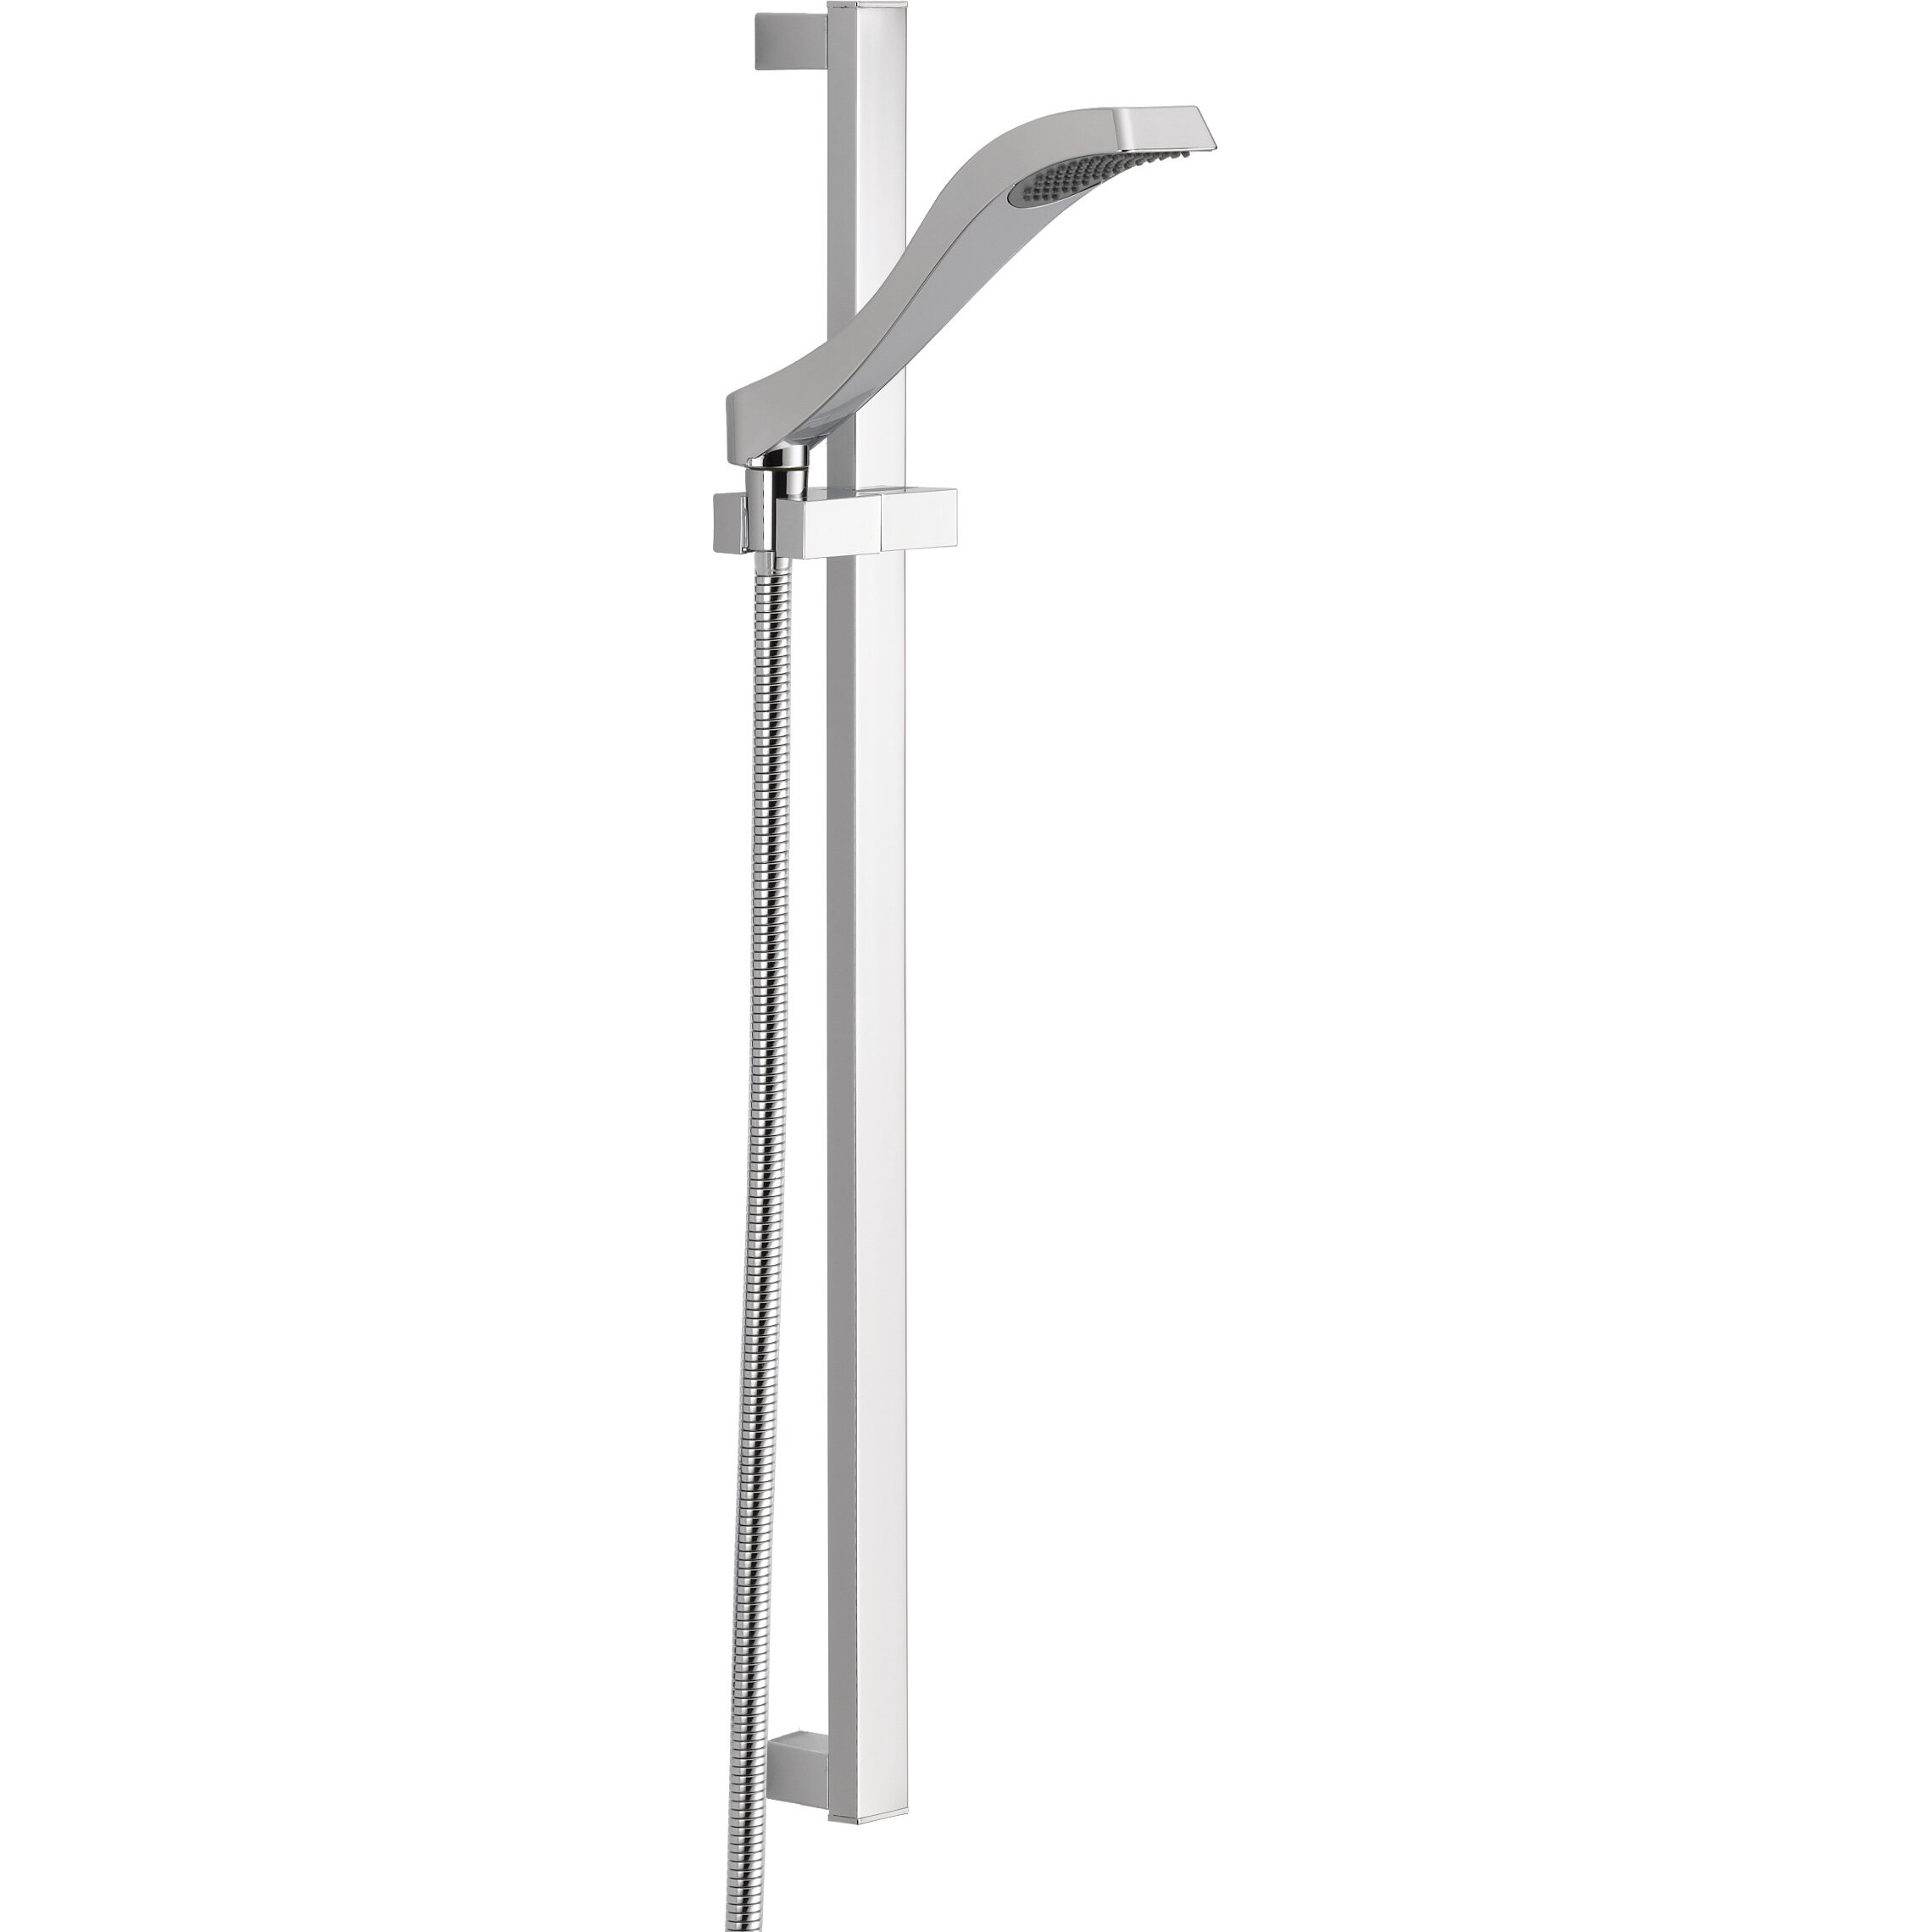 Delta Dryden Single Function Slide Bar Shower Head Trim & Reviews ... - Delta Dryden Single Function Slide Bar Shower Head Trim